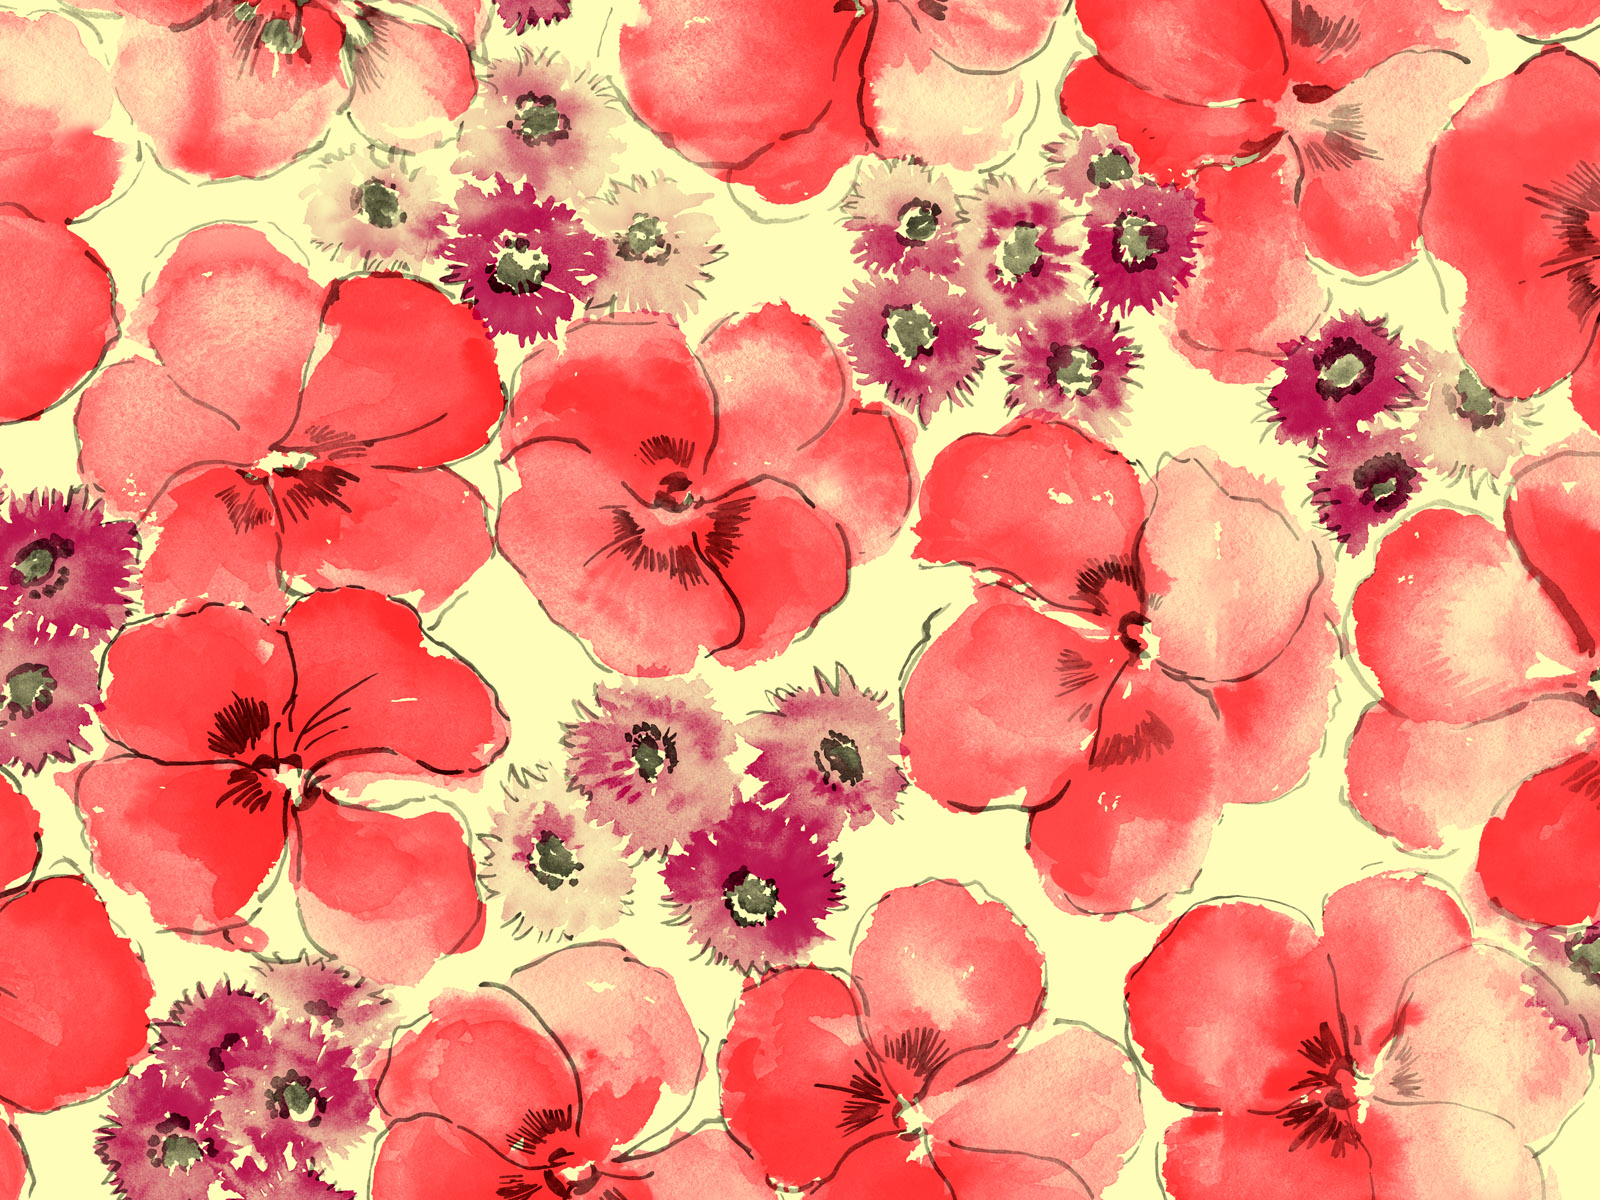 40 Amazing Flowers Paintings Wallpapers 1600 X 1200 - Flowers 18.jpg